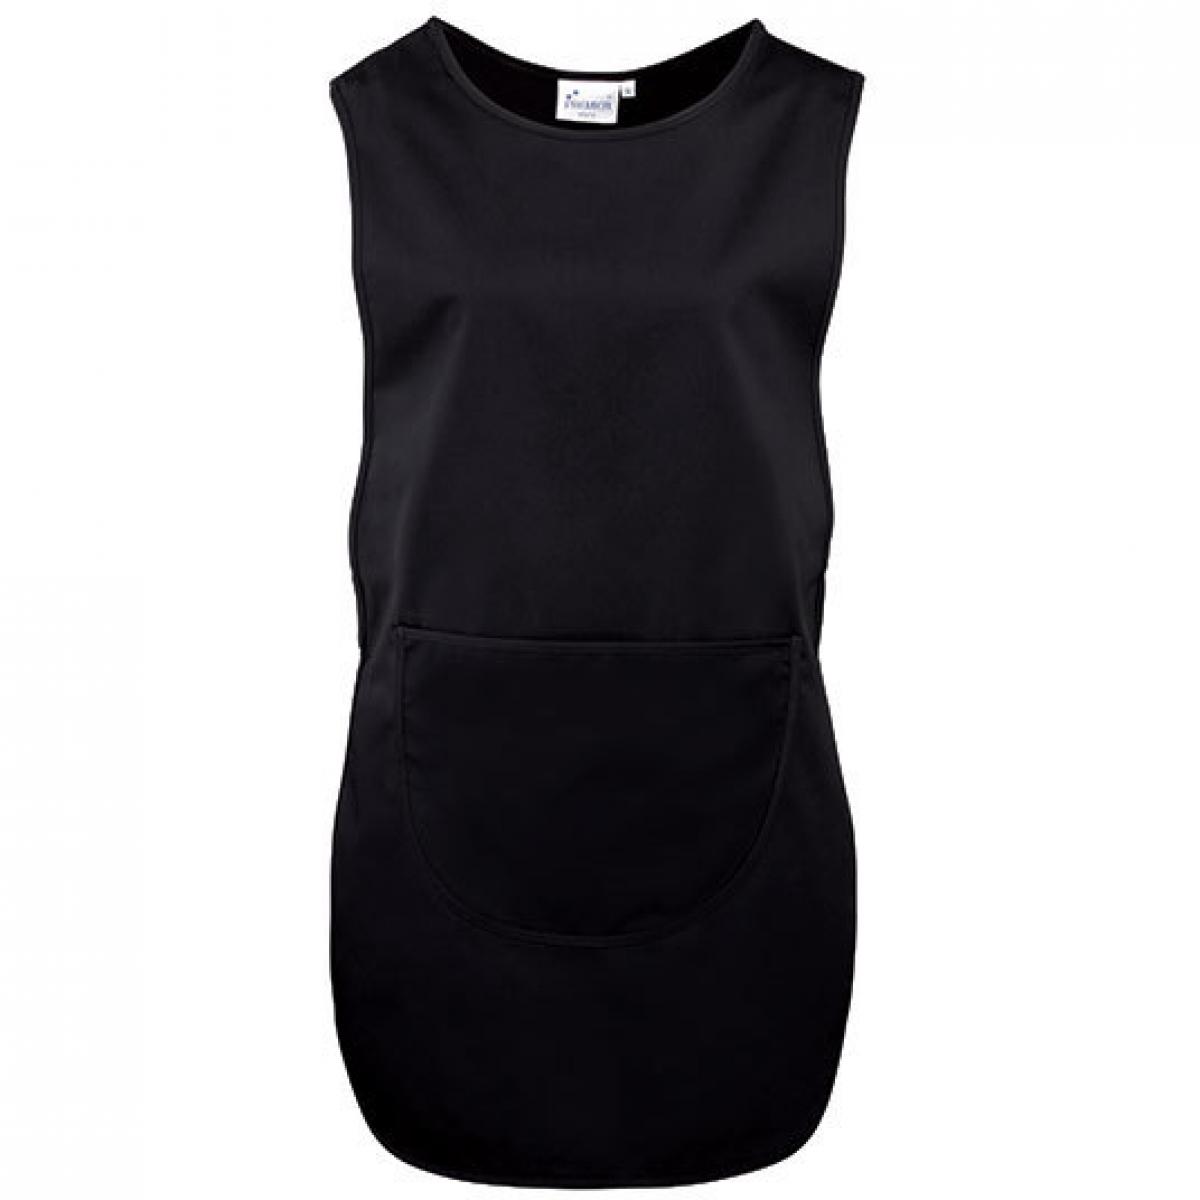 Hersteller: Premier Workwear Herstellernummer: PR172 Artikelbezeichnung: Women`s Long Pocket Tabard - Waschbar bis 60 °C Farbe: Black